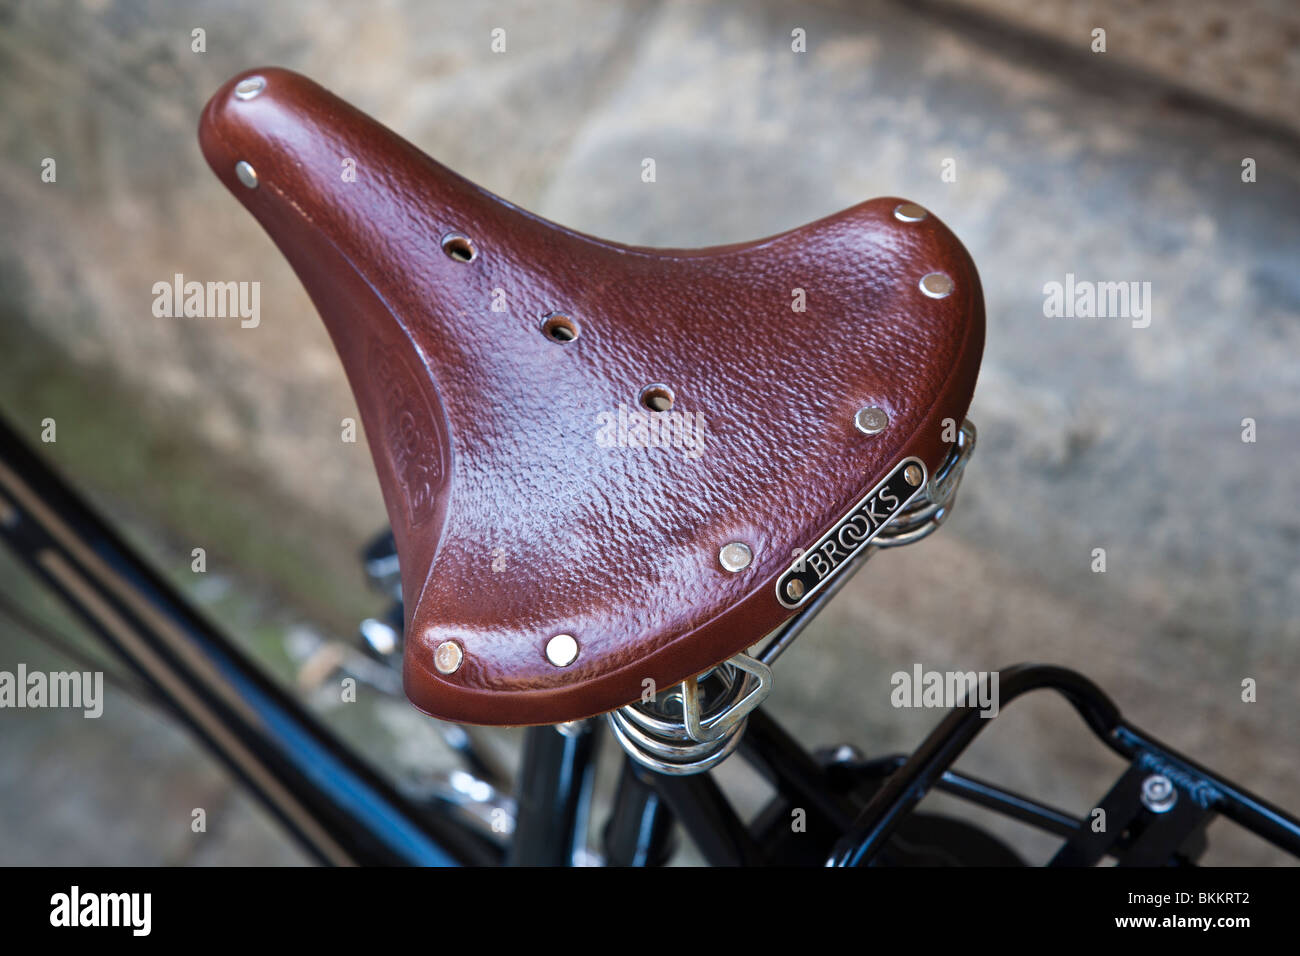 Leather bike saddle Stock Photo